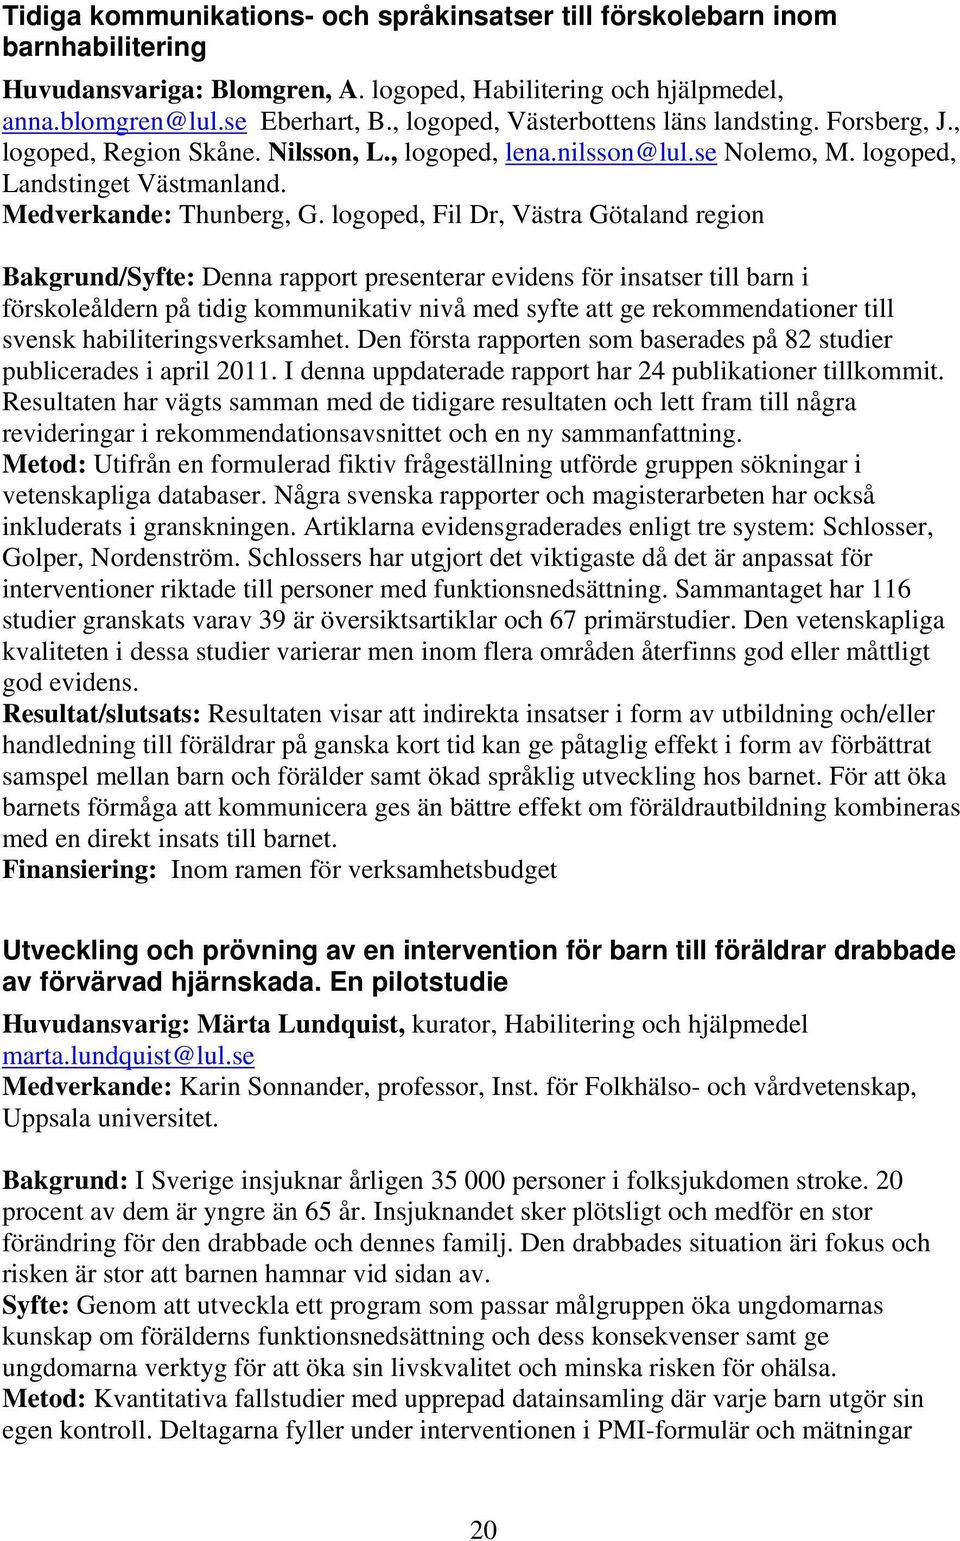 logoped, Fil Dr, Västra Götaland region Bakgrund/Syfte: Denna rapport presenterar evidens för insatser till barn i förskoleåldern på tidig kommunikativ nivå med syfte att ge rekommendationer till